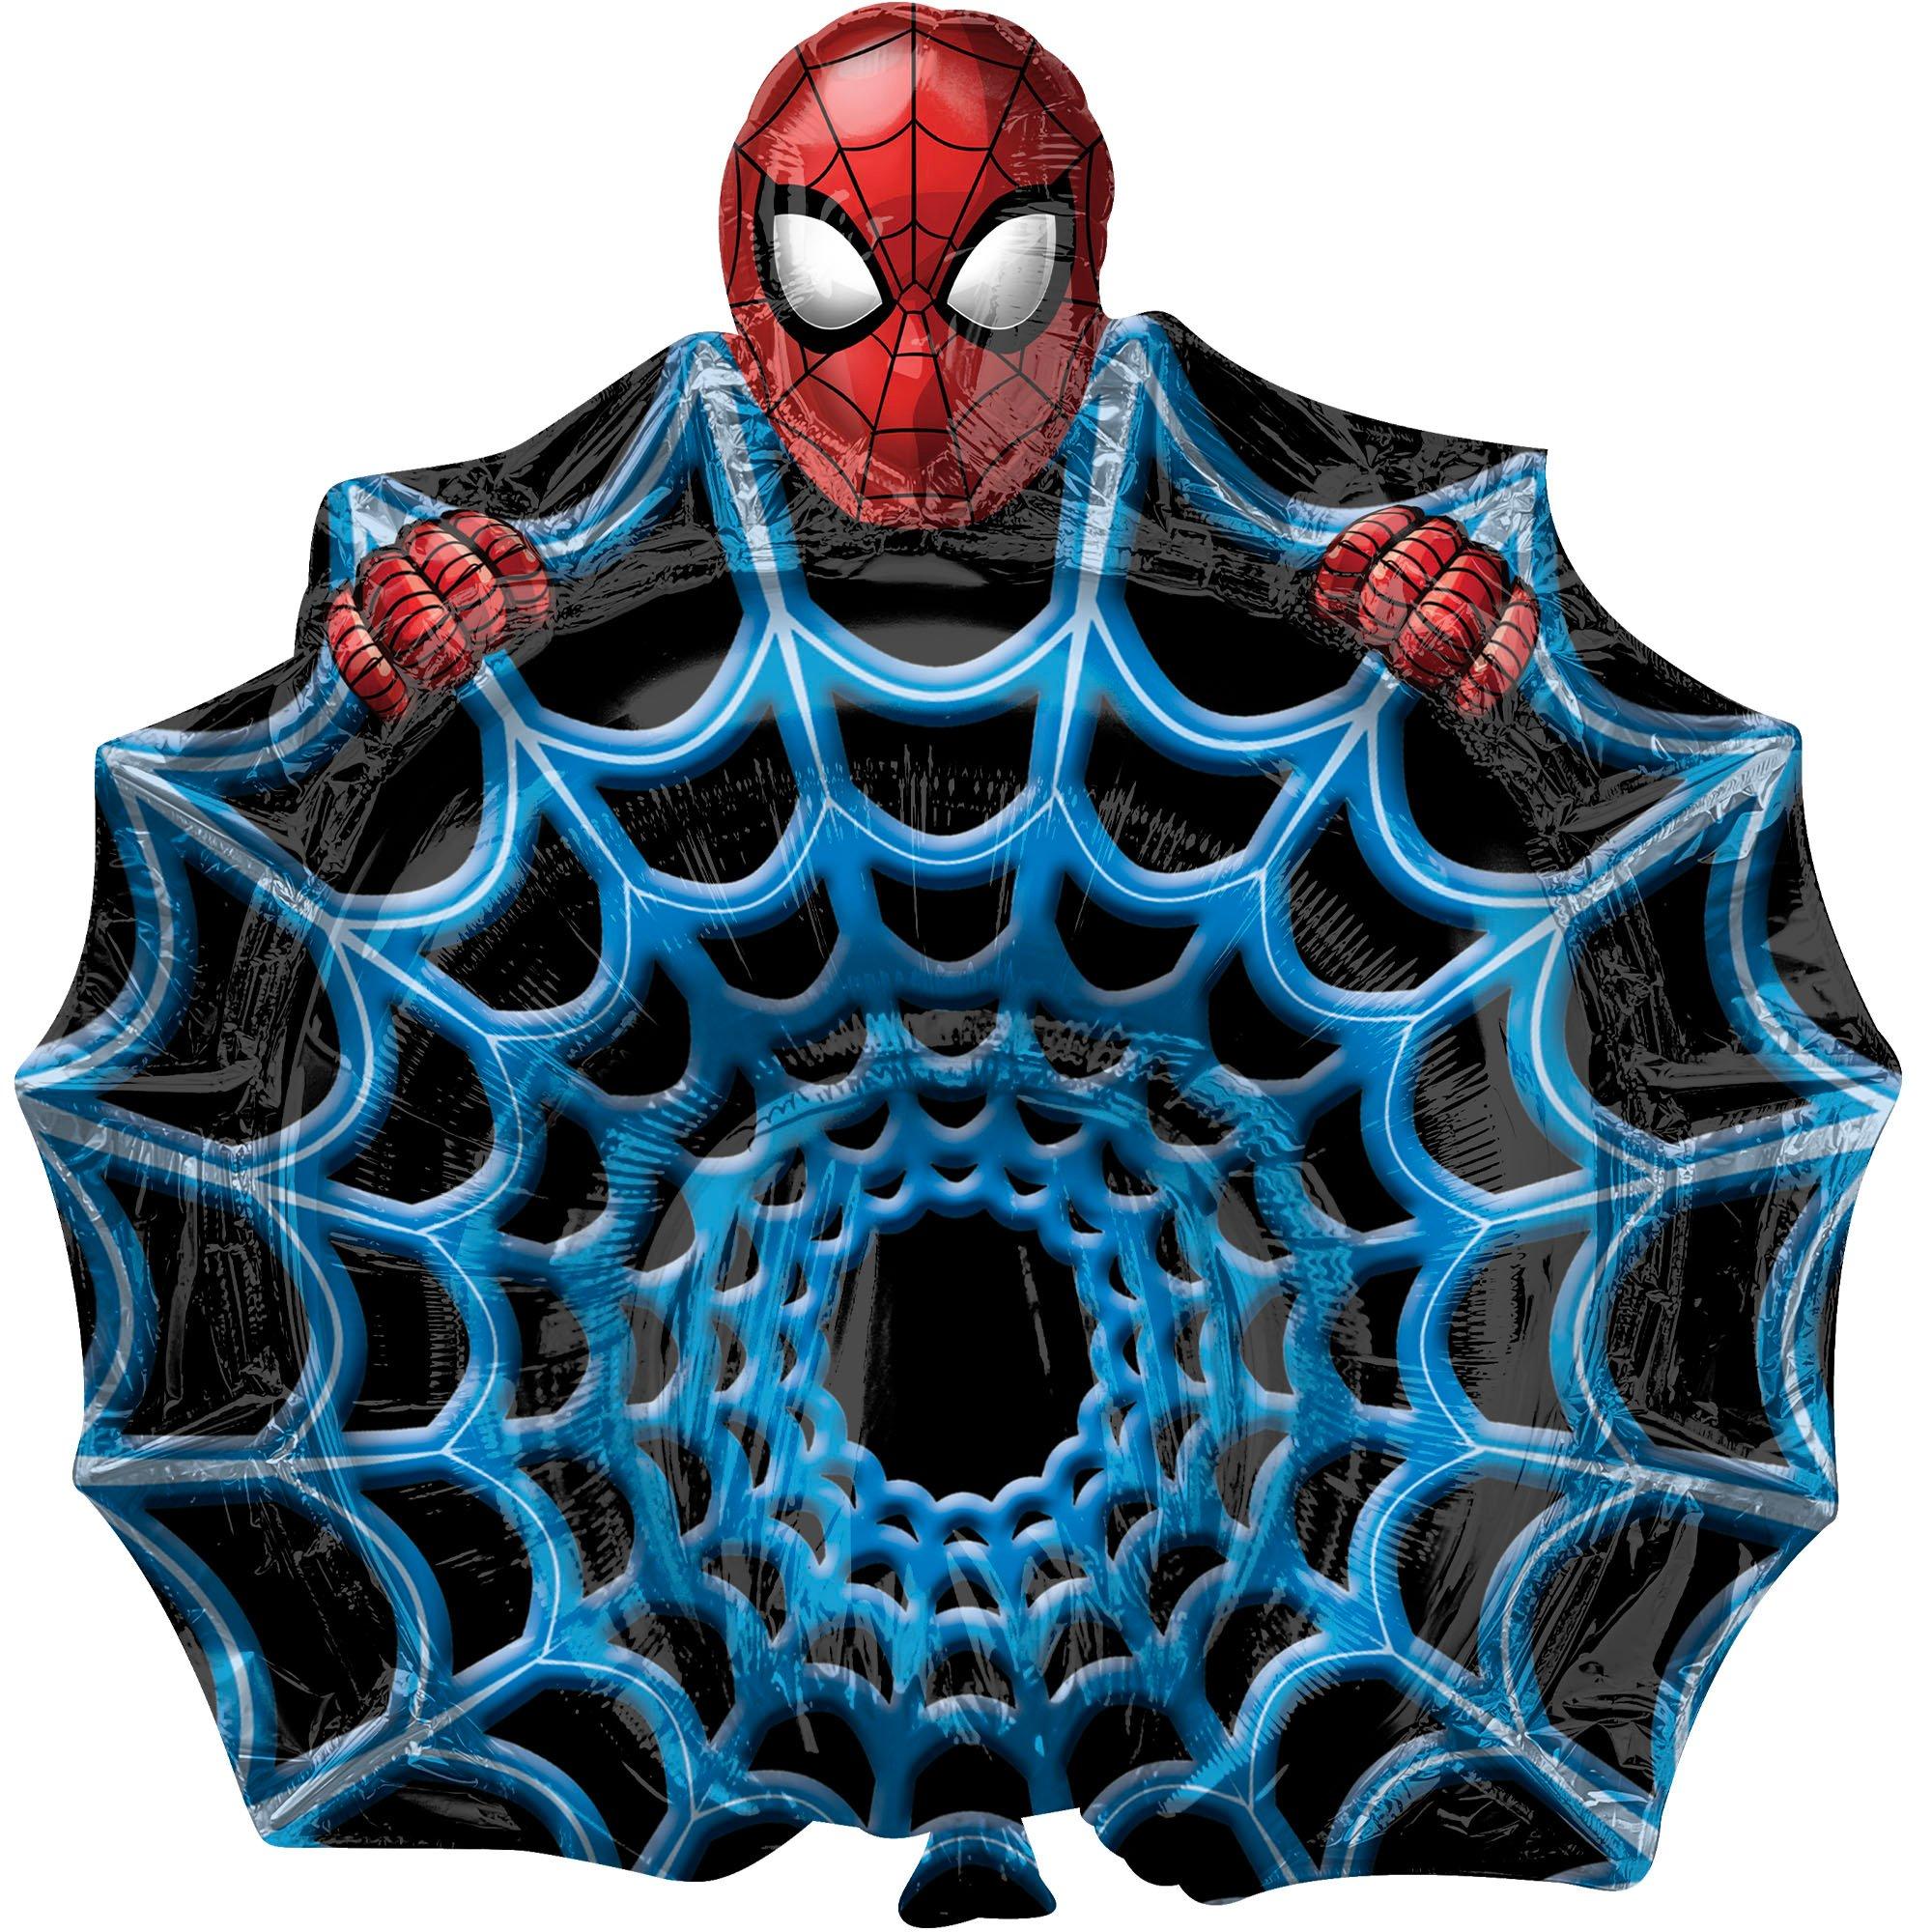 Spiderman Pinata 20” x 12” x 6”